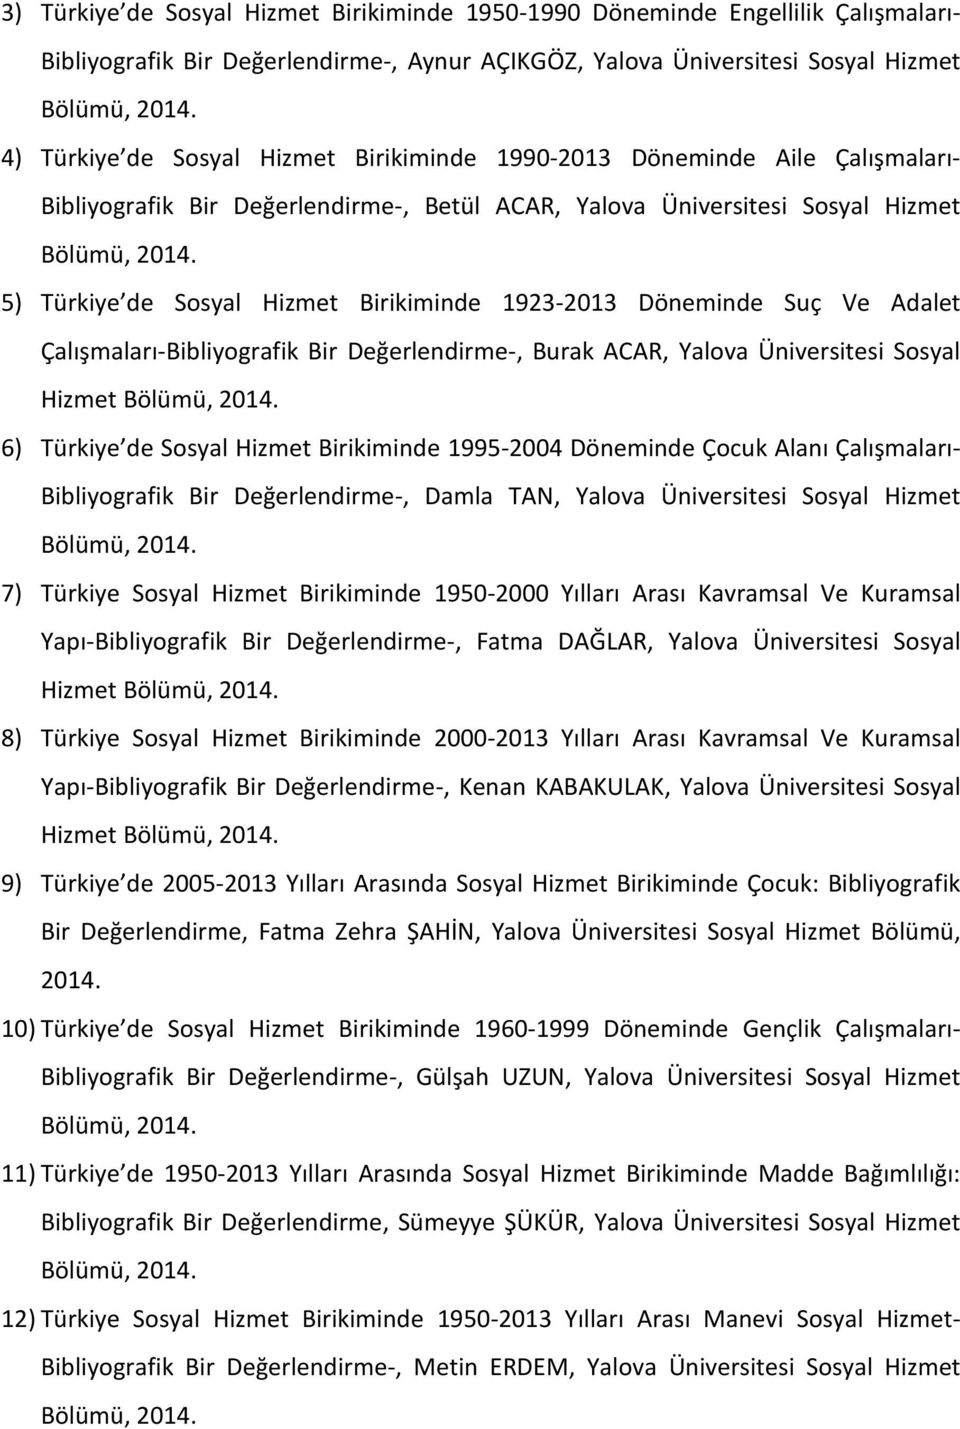 5) Türkiye de Sosyal Hizmet Birikiminde 1923-2013 Döneminde Suç Ve Adalet Çalışmaları-Bibliyografik Bir Değerlendirme-, Burak ACAR, Yalova Üniversitesi Sosyal Hizmet Bölümü, 2014.